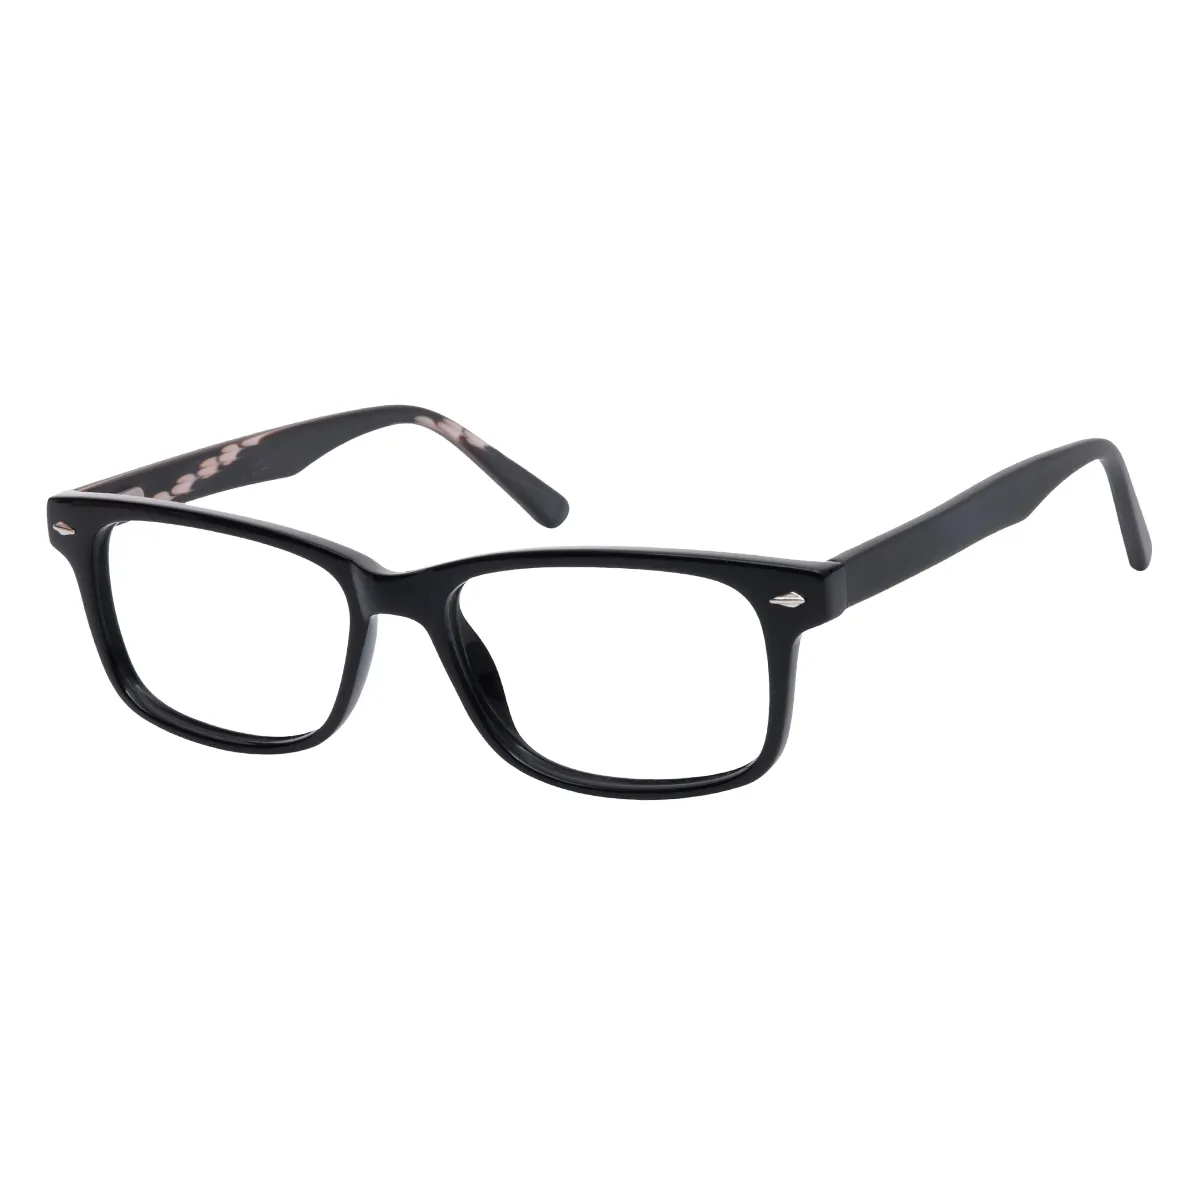 Juan - Rectangle Black Glasses for Men & Women